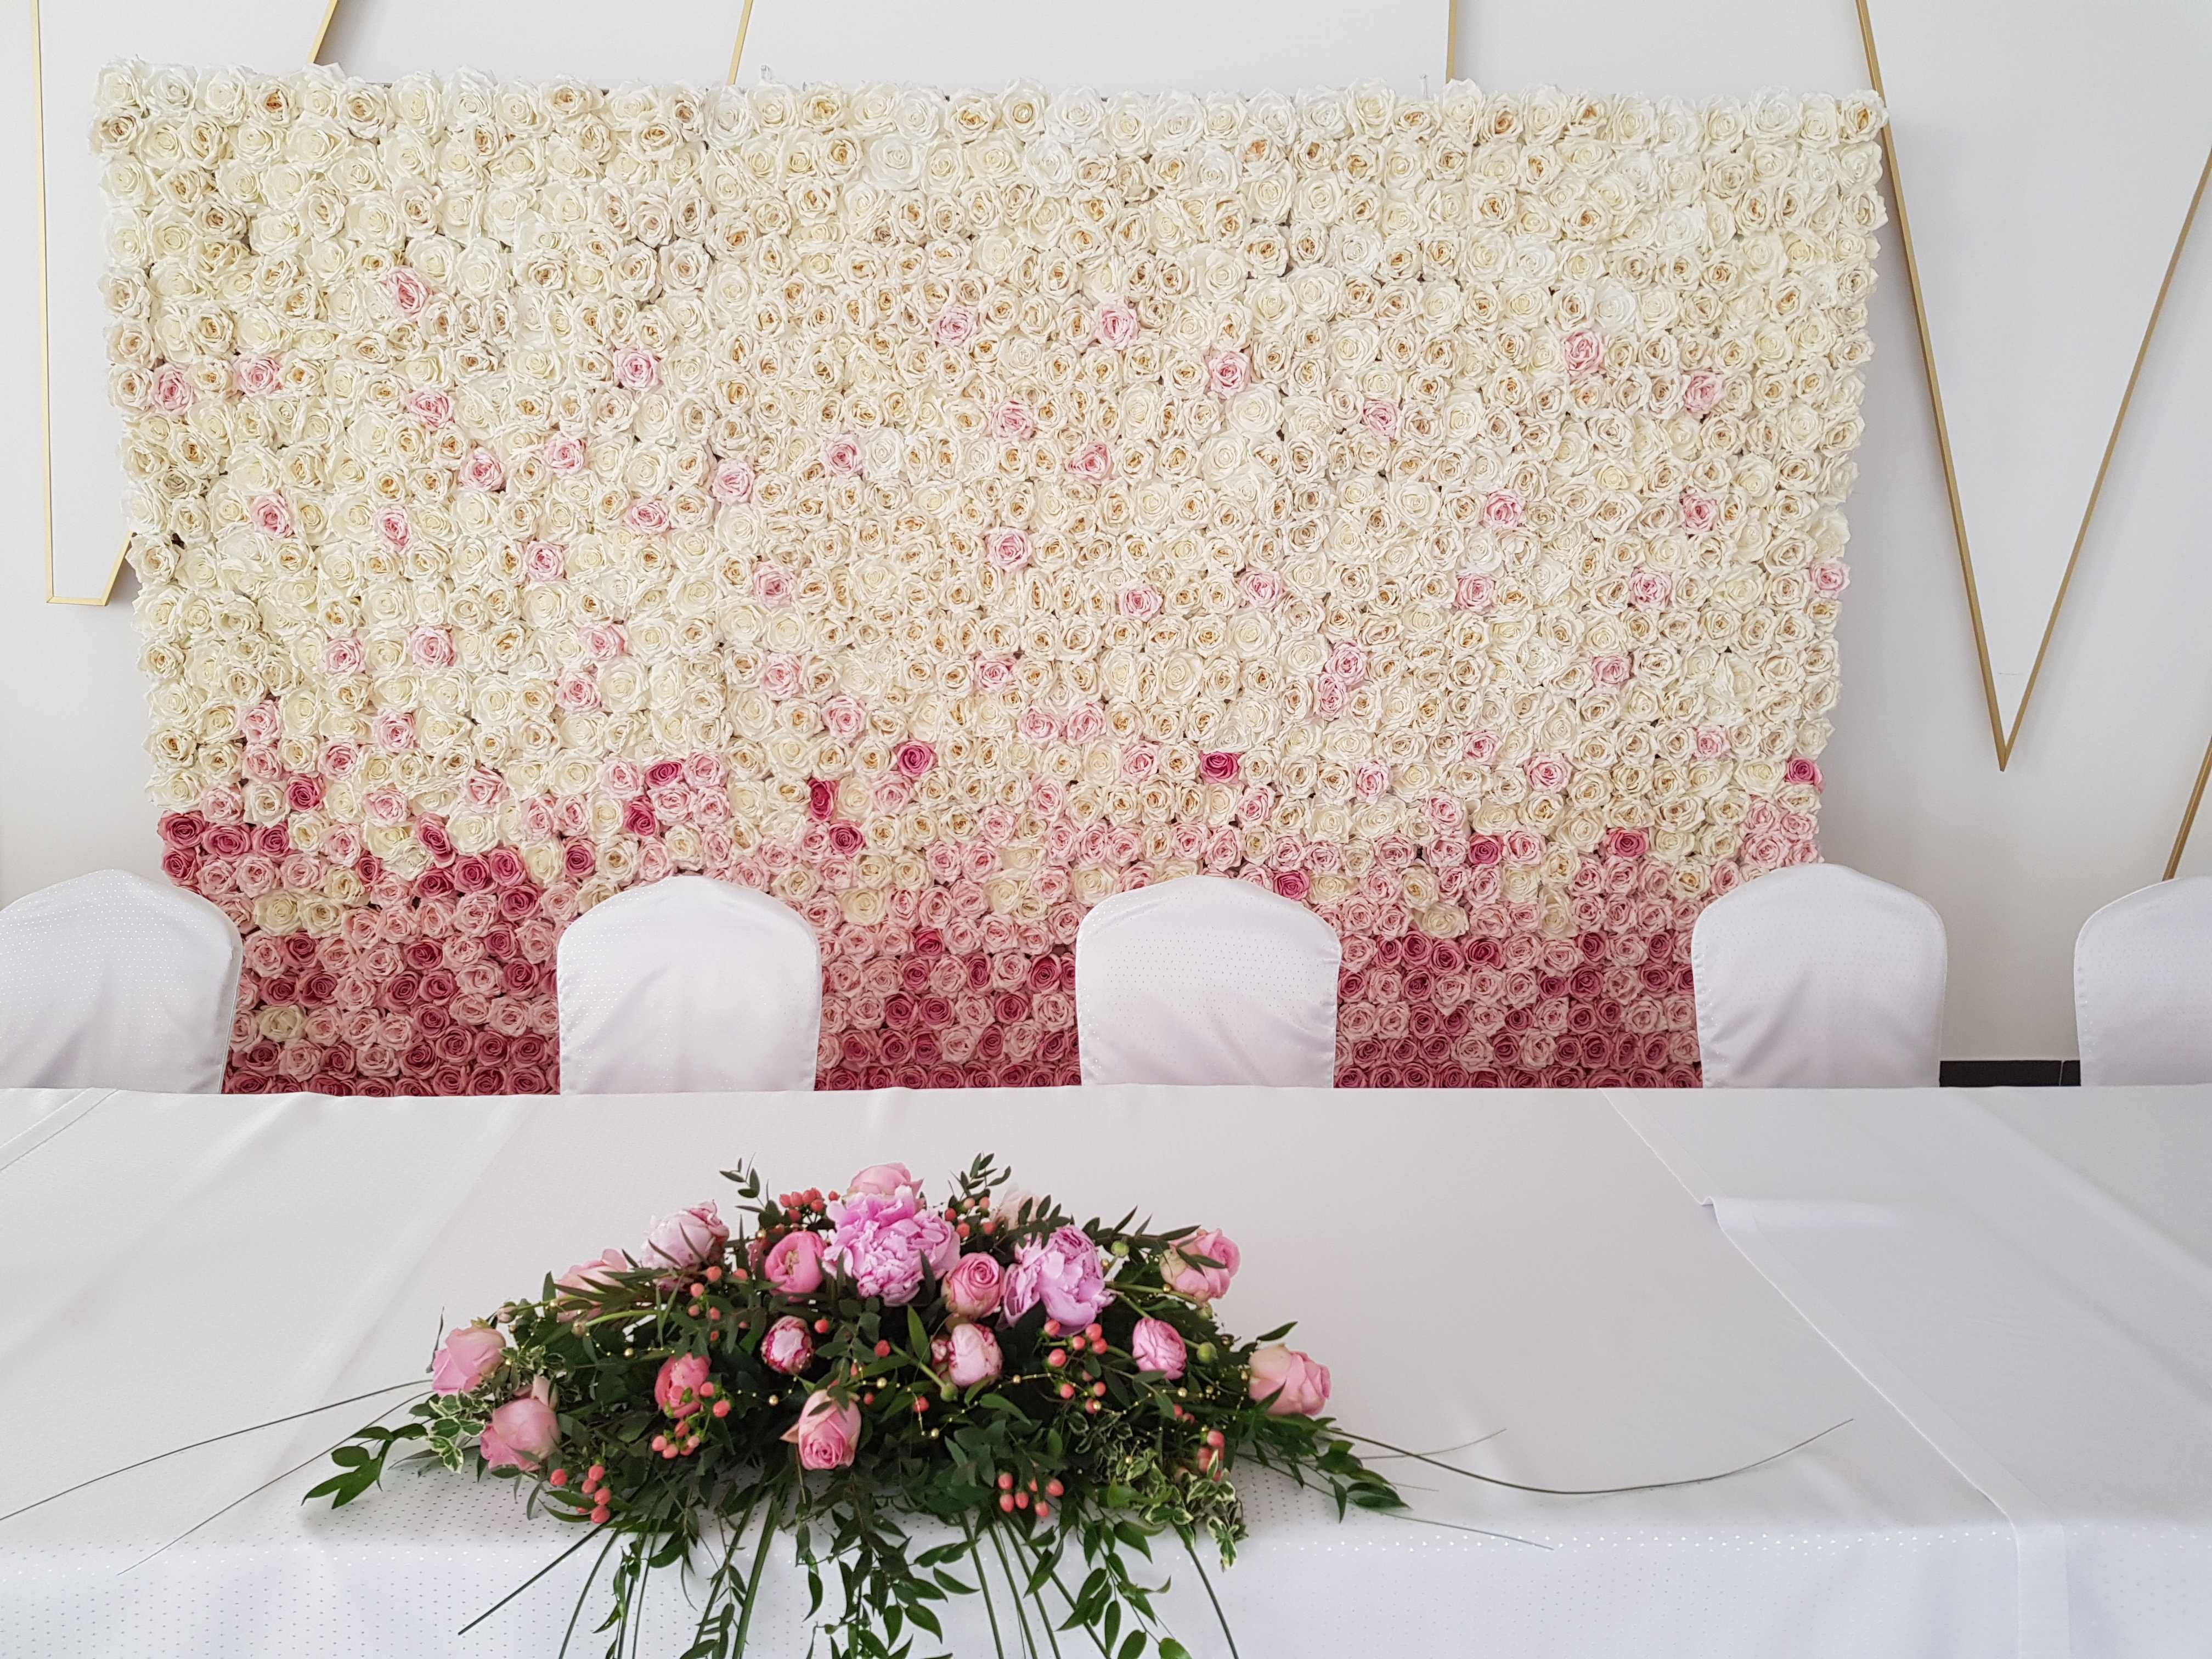 Ścianka kwiatowa Flower wall tło dekoracja wesele ślub przyjęcie